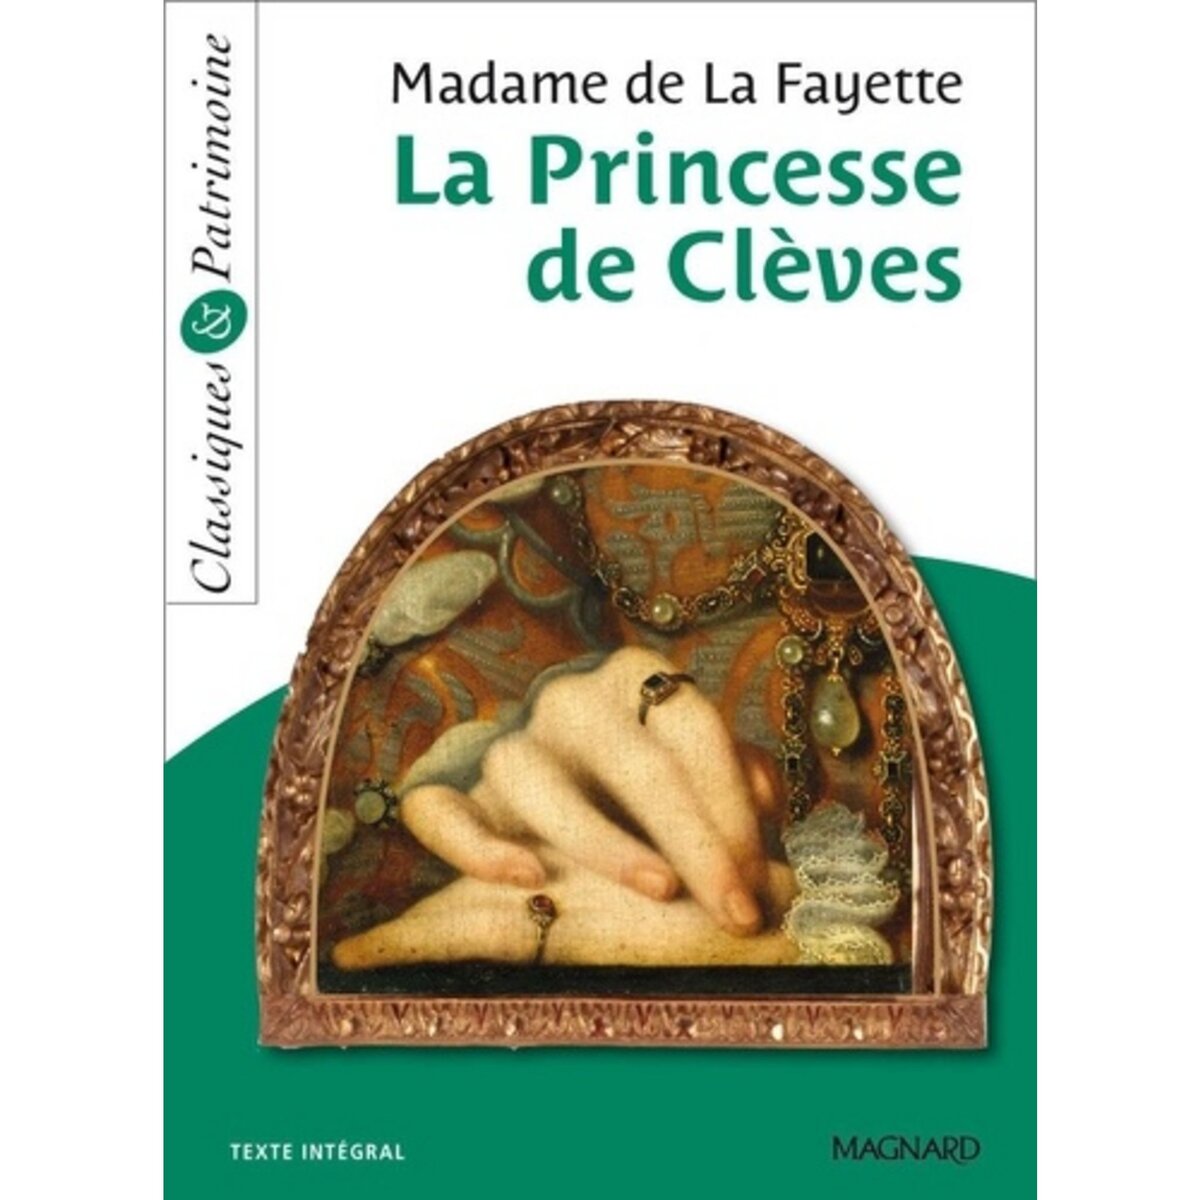  LA PRINCESSE DE CLEVES, de La Fayette Marie-Madeleine